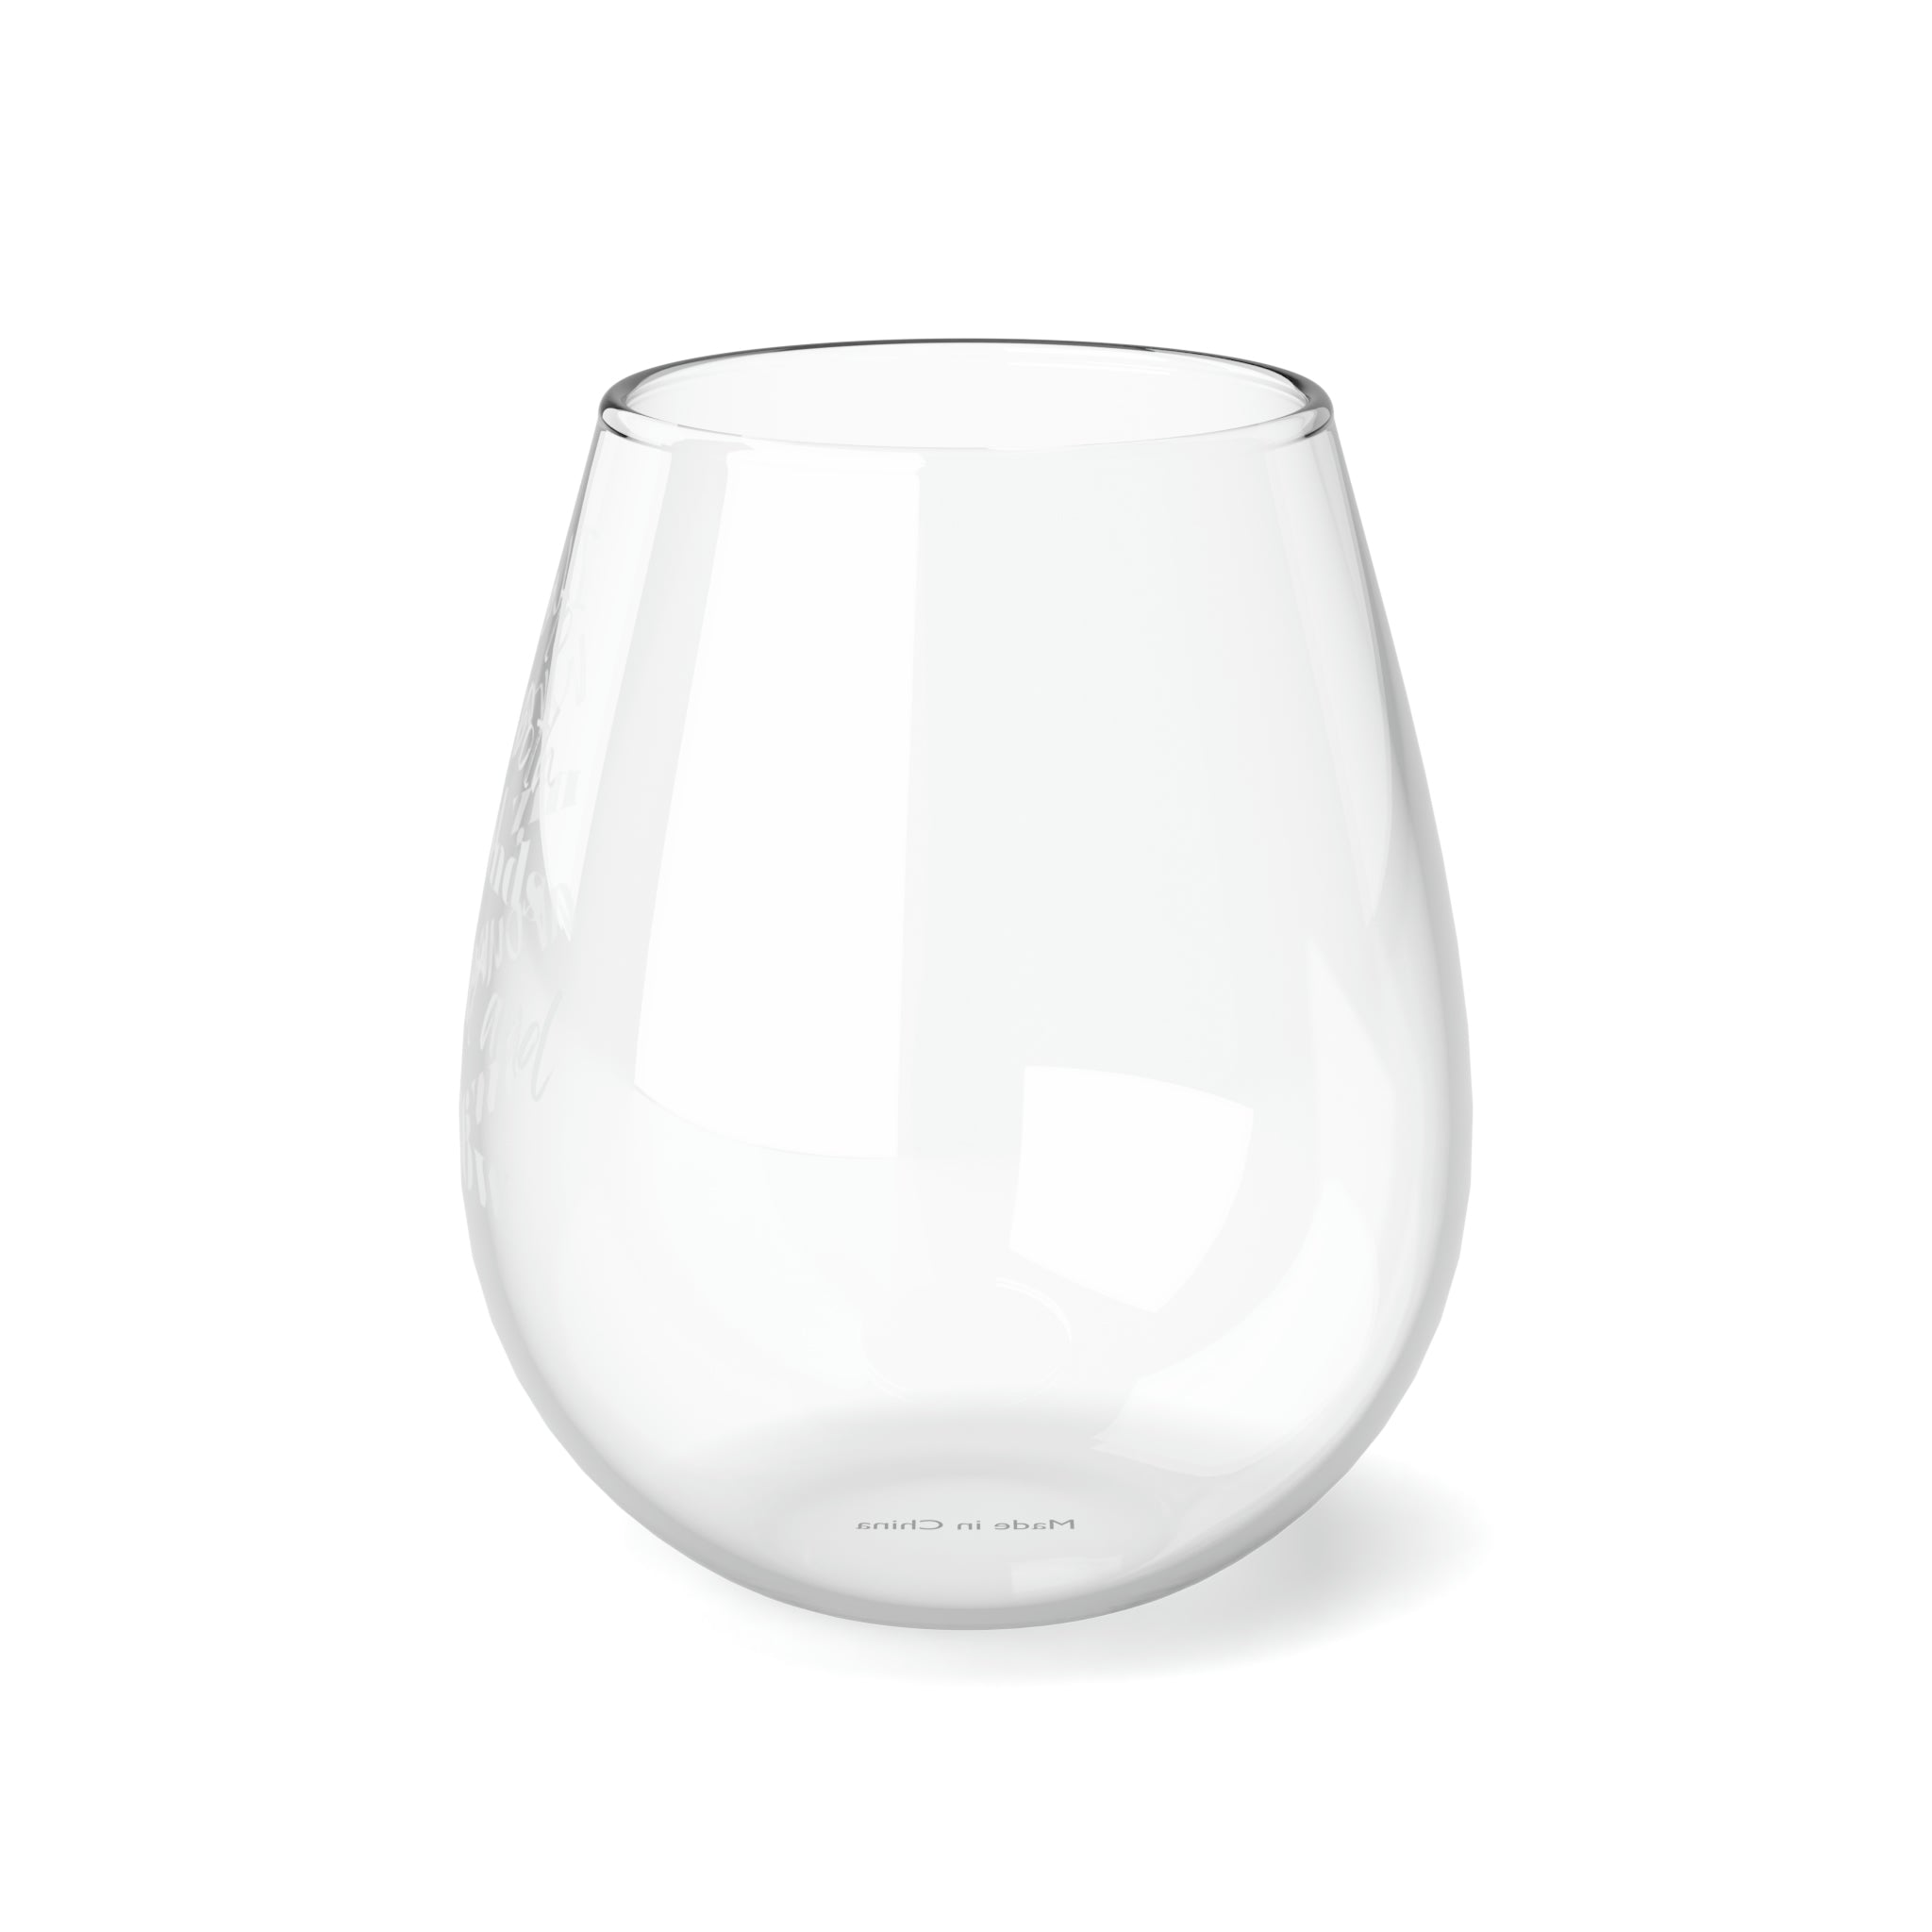 Wrap My Hands Around It - Stemless Wine Glass, 11.75oz